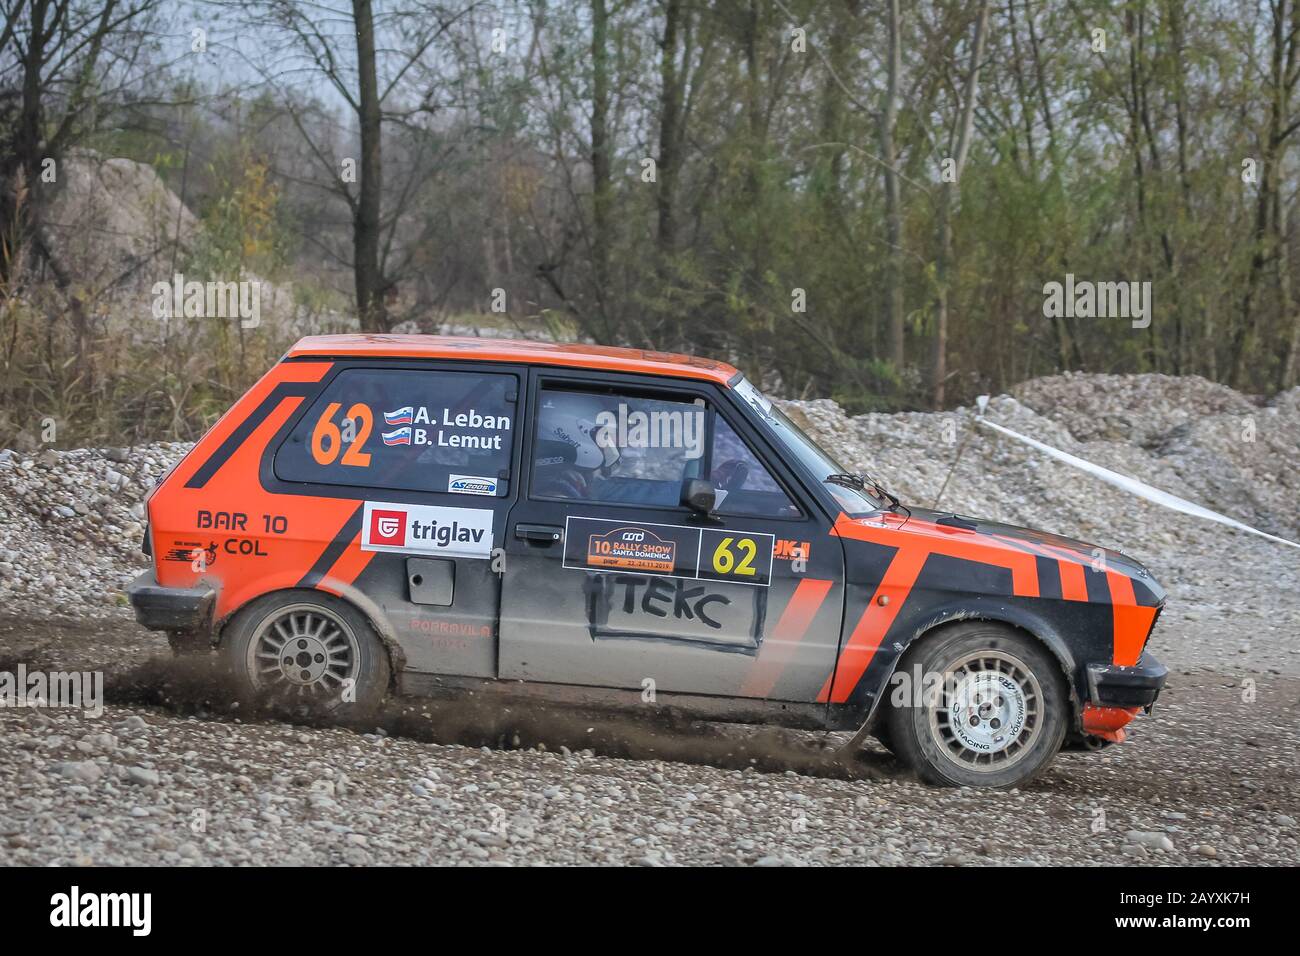 Sveta Nedjelja, Croatia - November 24, 2019. 10th Rally Show Santa Domenica. Anej Leban and Bostjan Lemut in Zastava Yugo, Sprint. Stock Photo